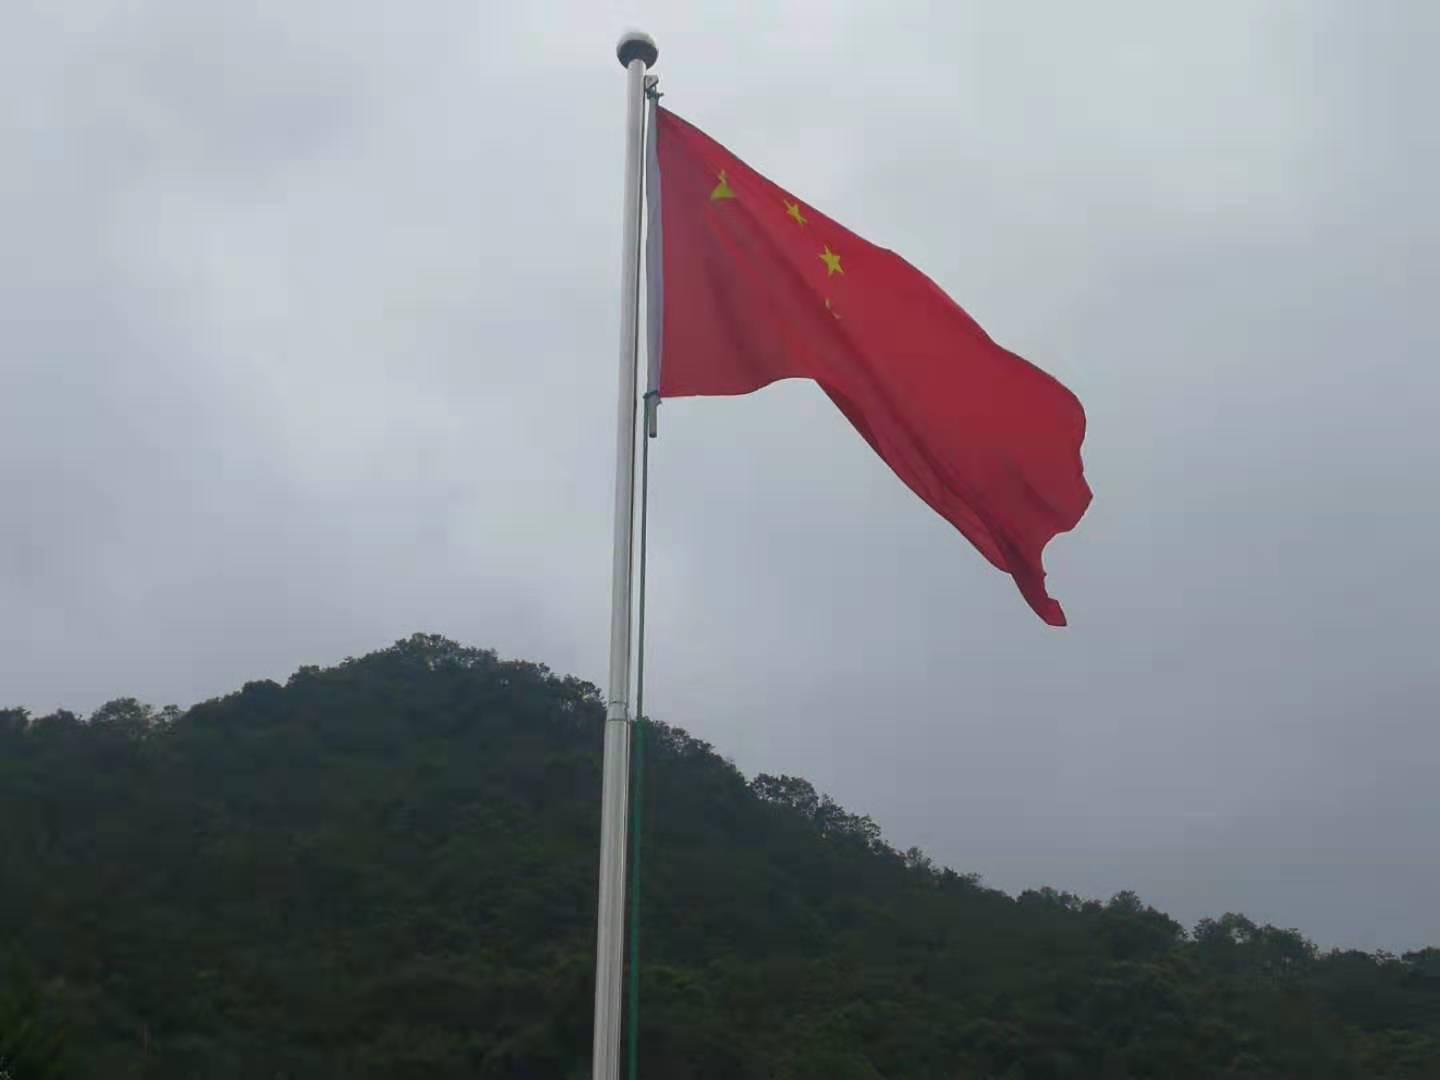 温州雁荡山能仁寺喜迎新中国成立70周年升国旗仪式(图7)